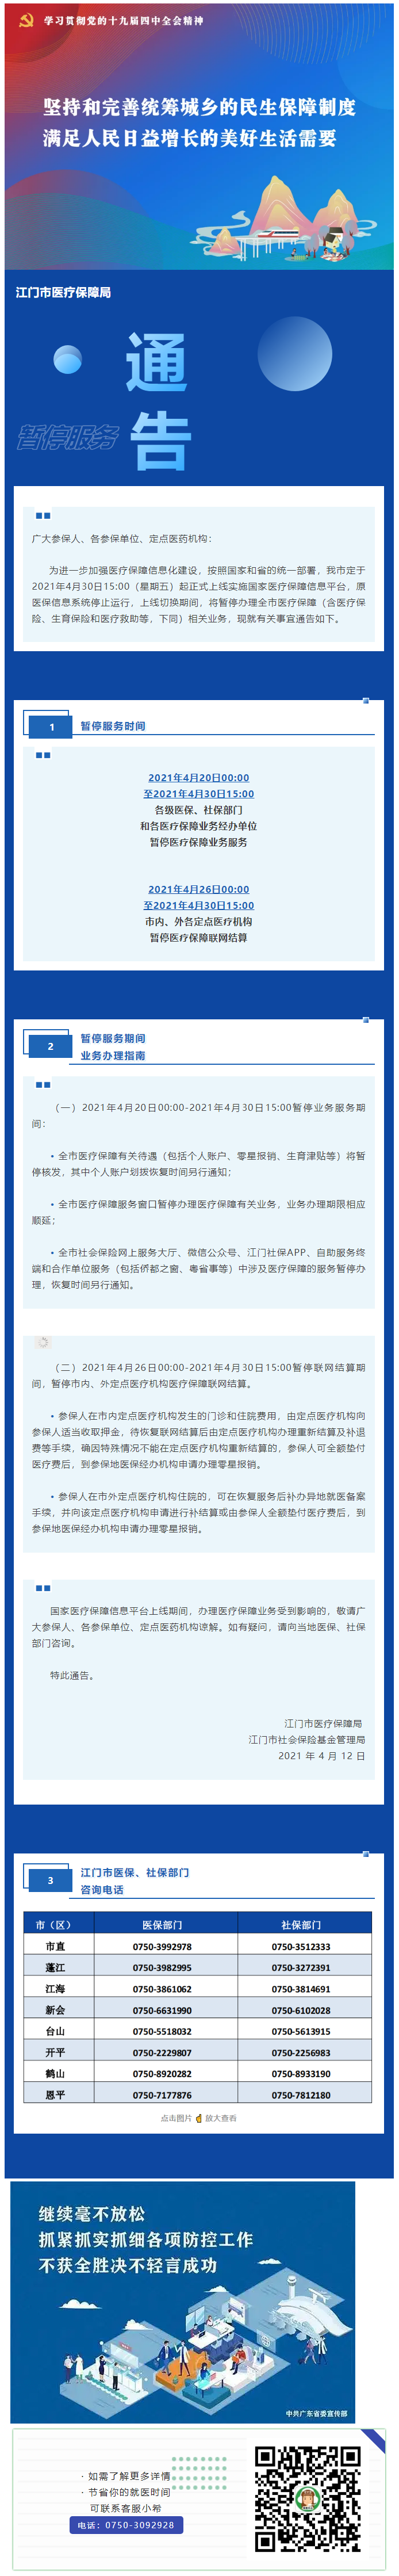 关于 2021 年江门市暂停医疗保障服务的通告.png